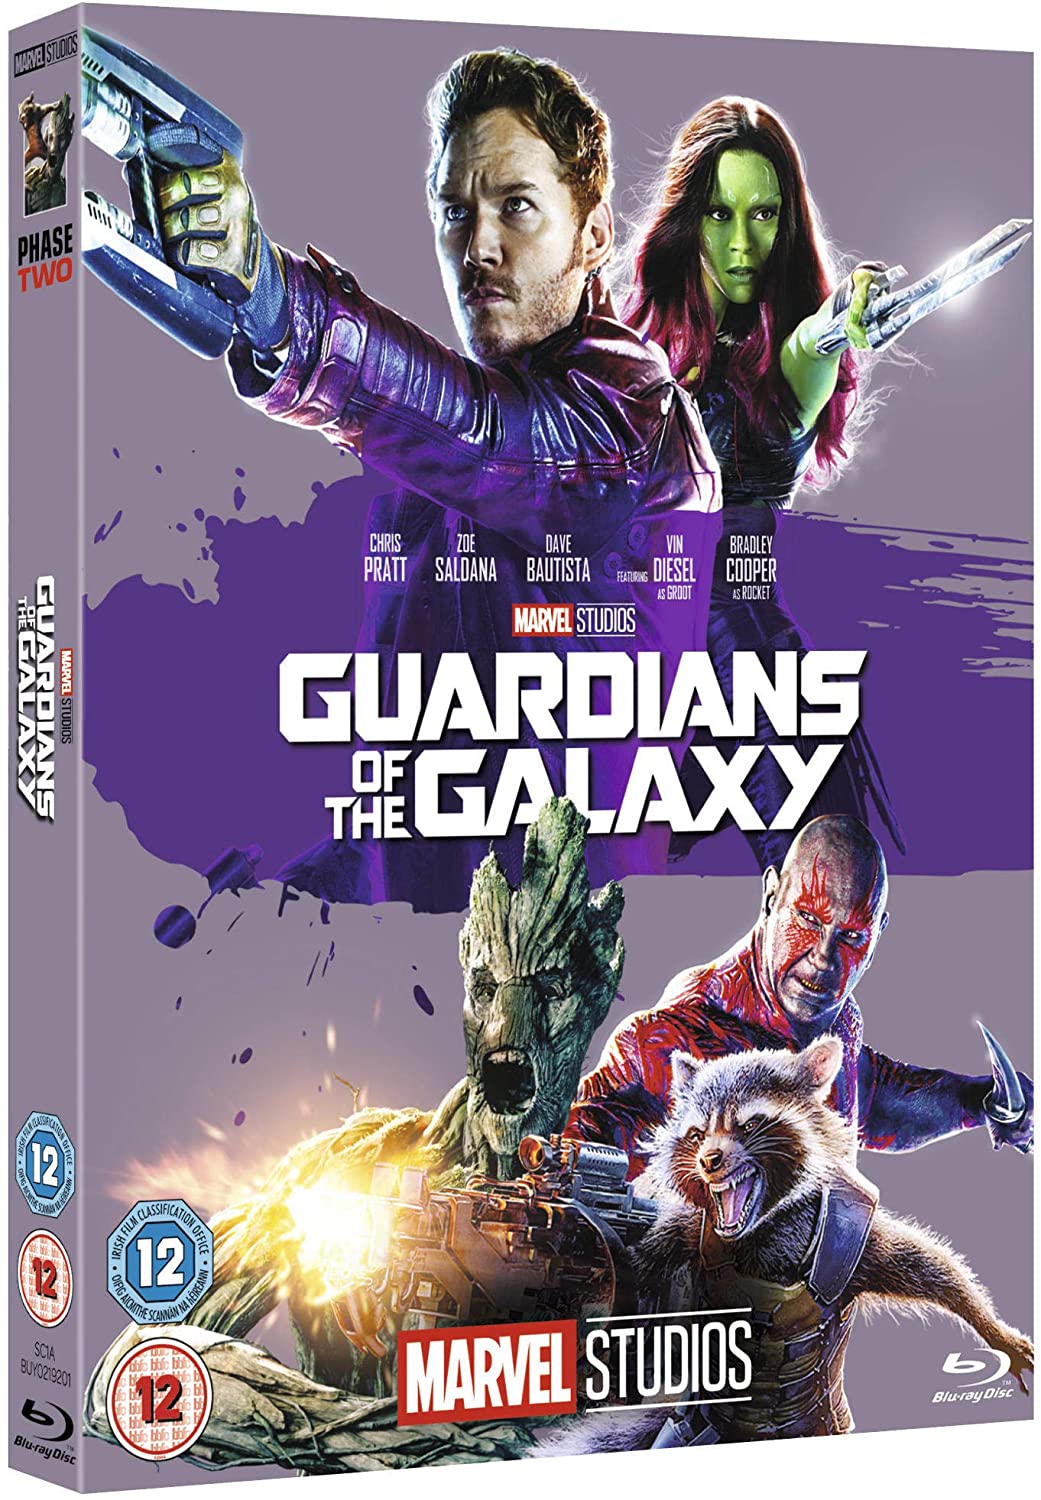 Guardianes de la galaxia [Blu-ray]